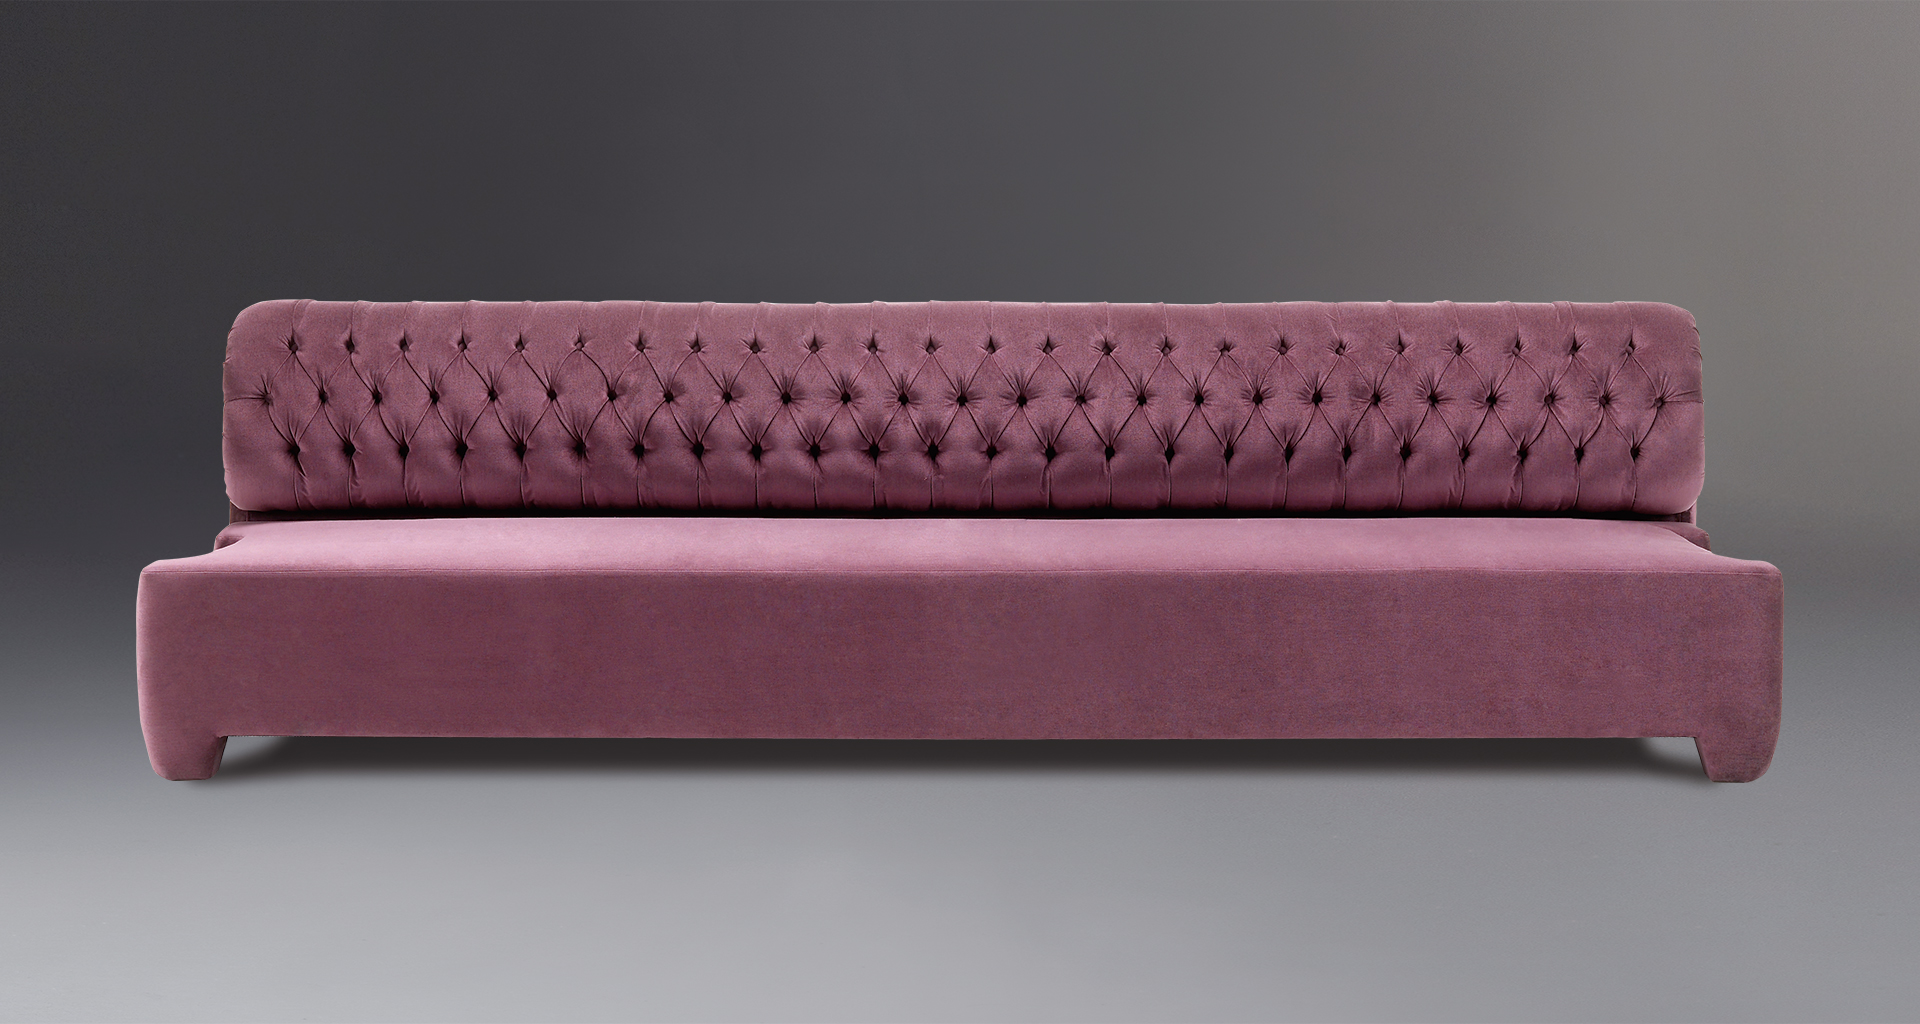 Adriano è un divano componibile che può assumere diverse forme e diversi rivestimento, del catalogo di Promemoria | Promemoria